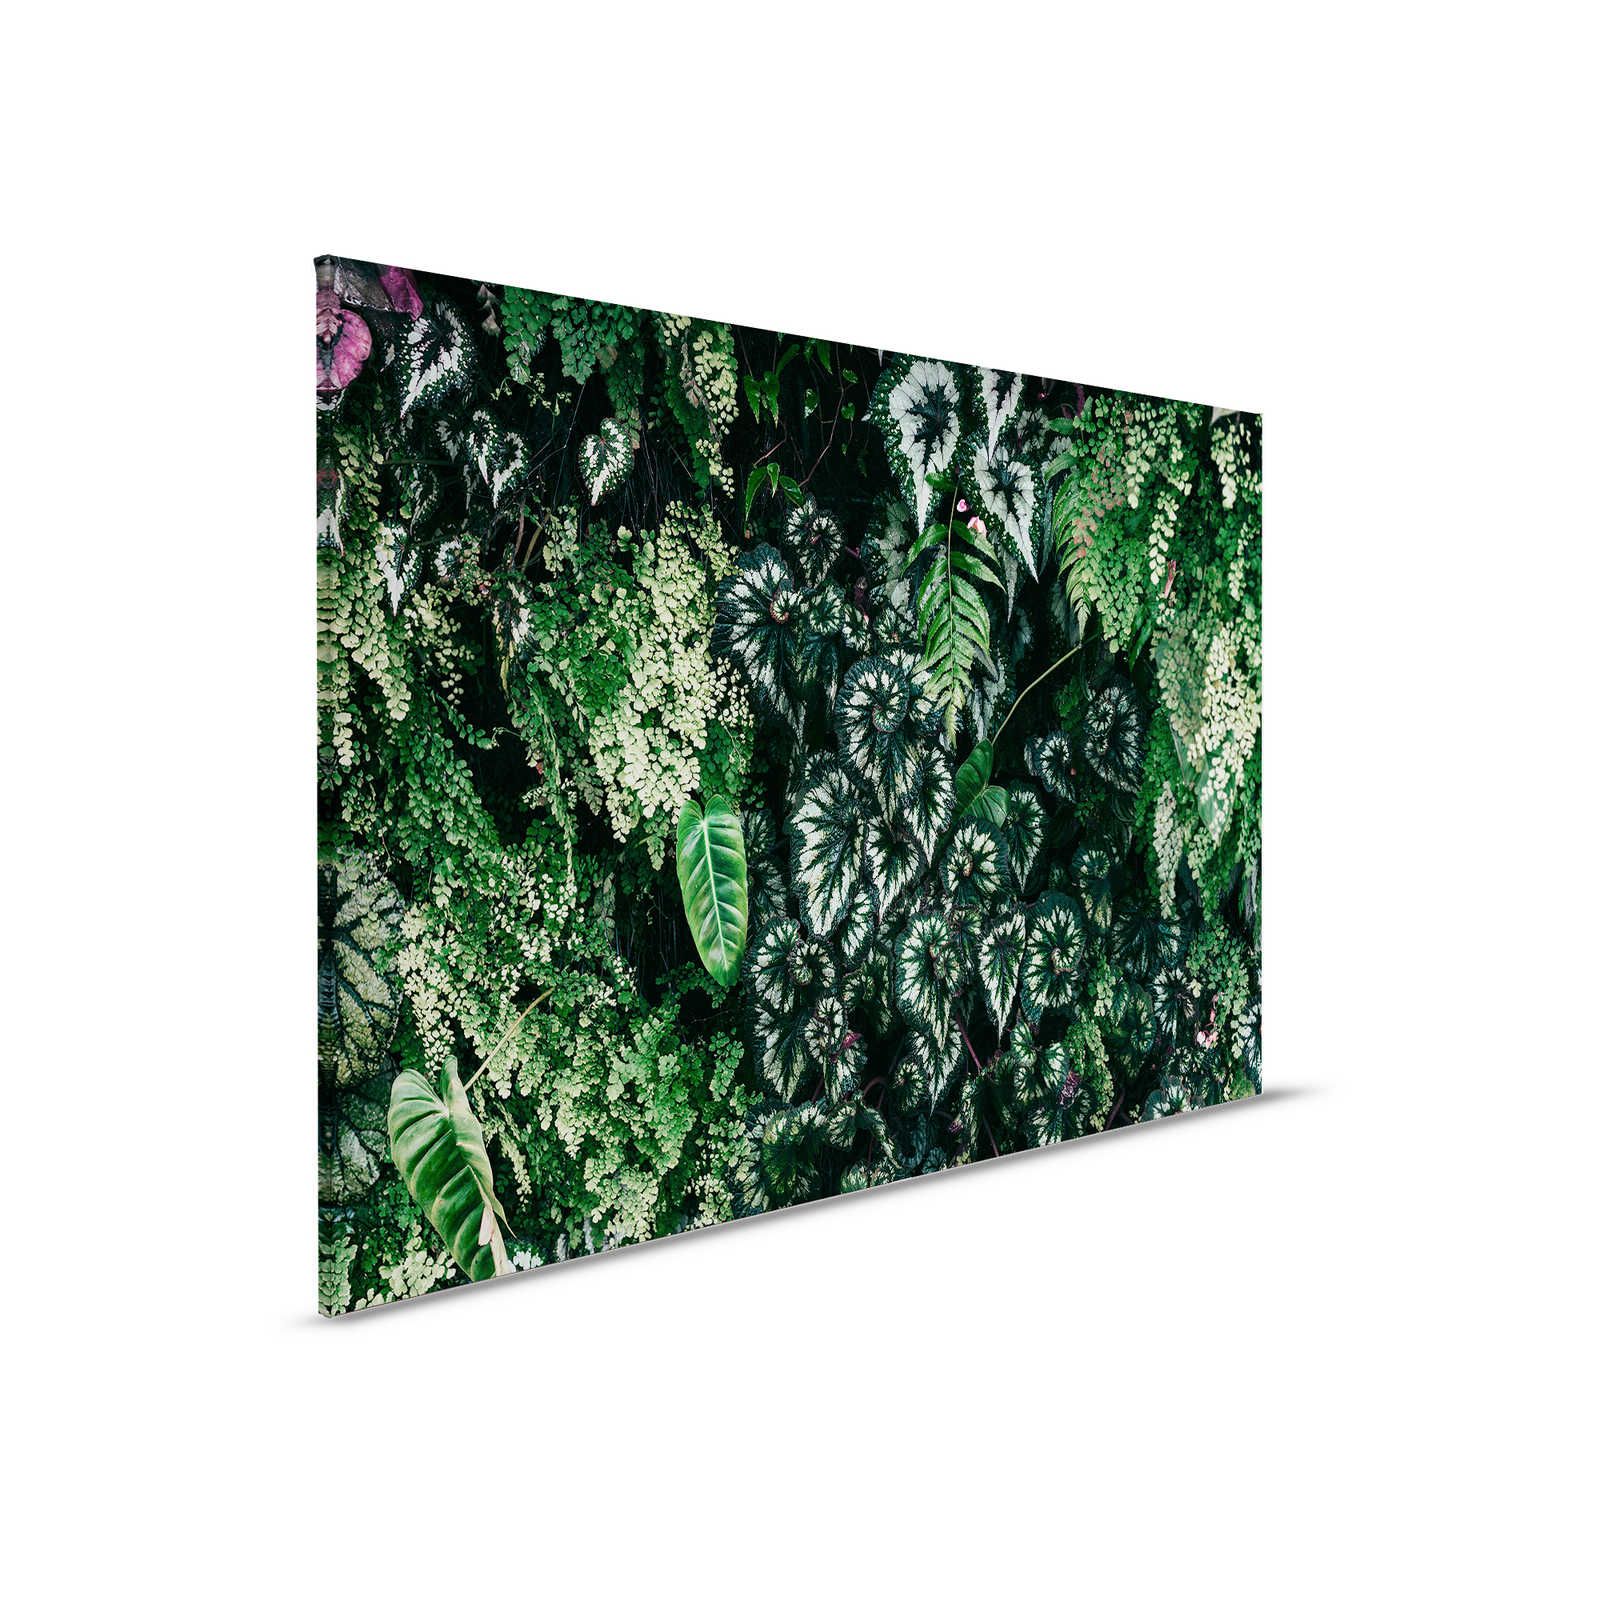 Deep Green 2 - Quadro su tela con foliage, felci e piante pendenti - 0,90 m x 0,60 m
